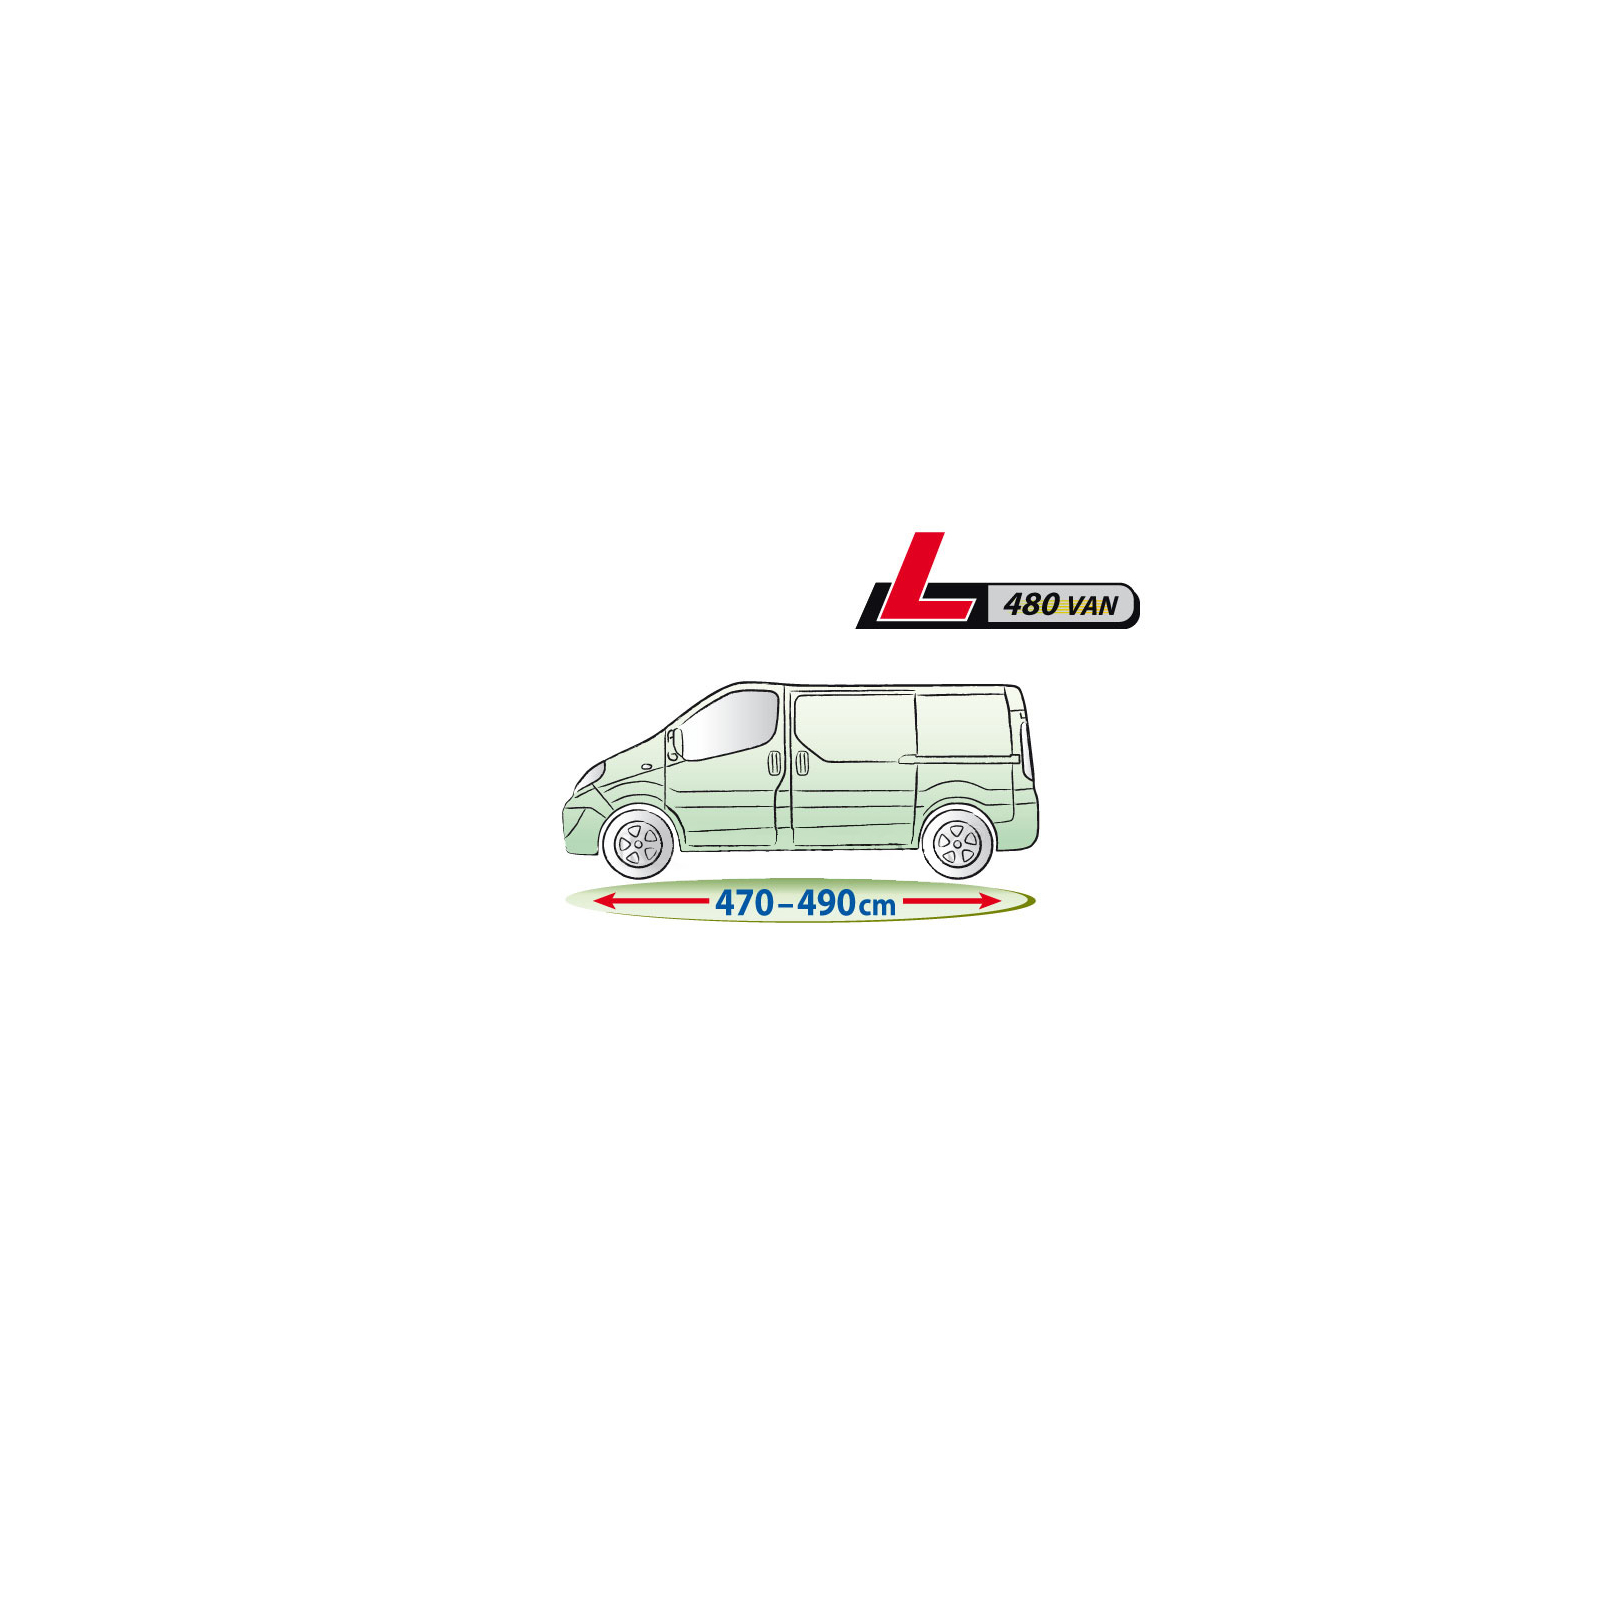 Тент автомобильный Kegel-Blazusiak Mobile Garage (5-4153-248-3020) изображение 3